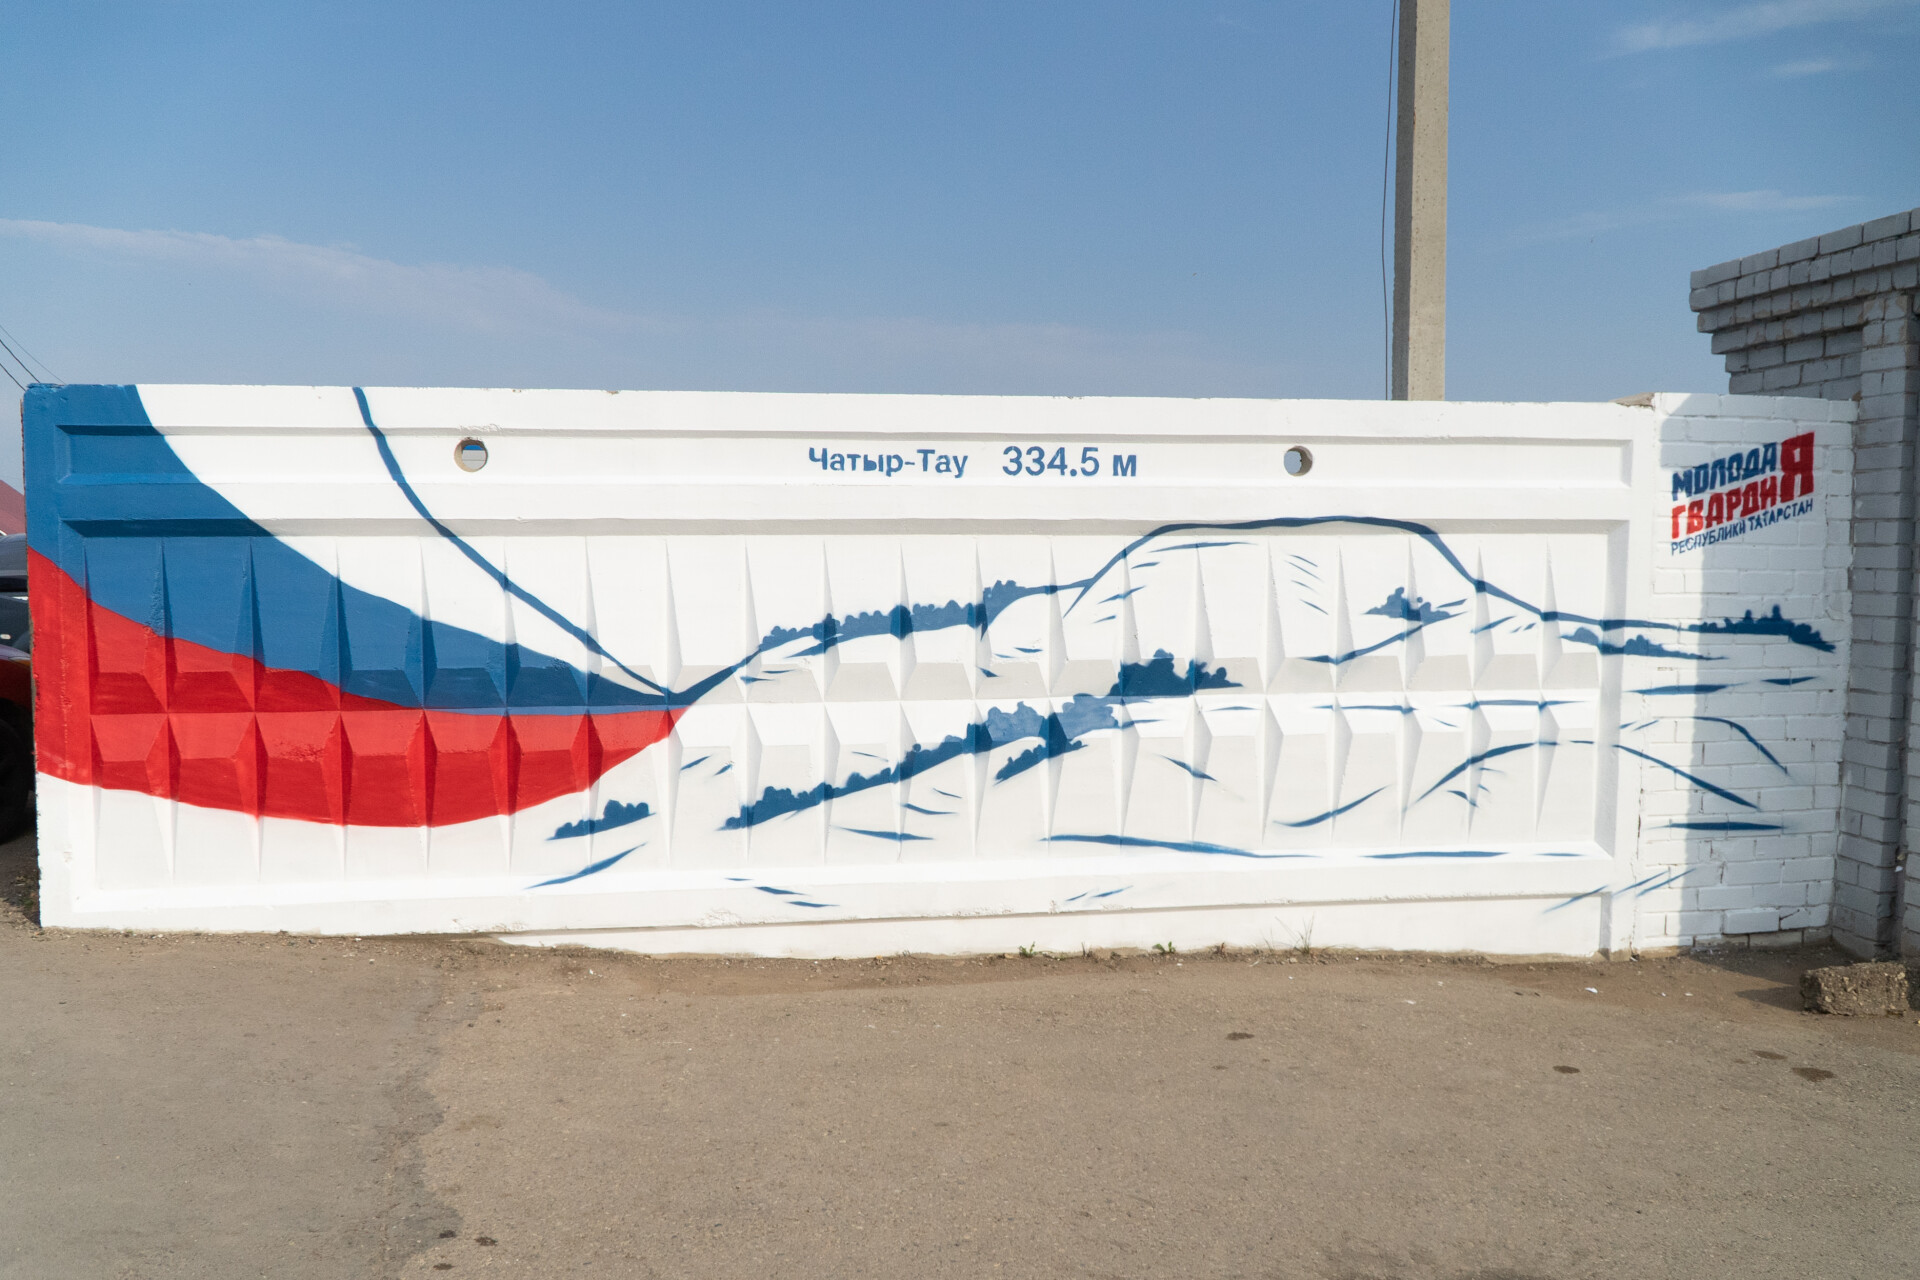 Ко Дню флага России в Азнакаево появилось граффити с изображением горы Чатыр-тау